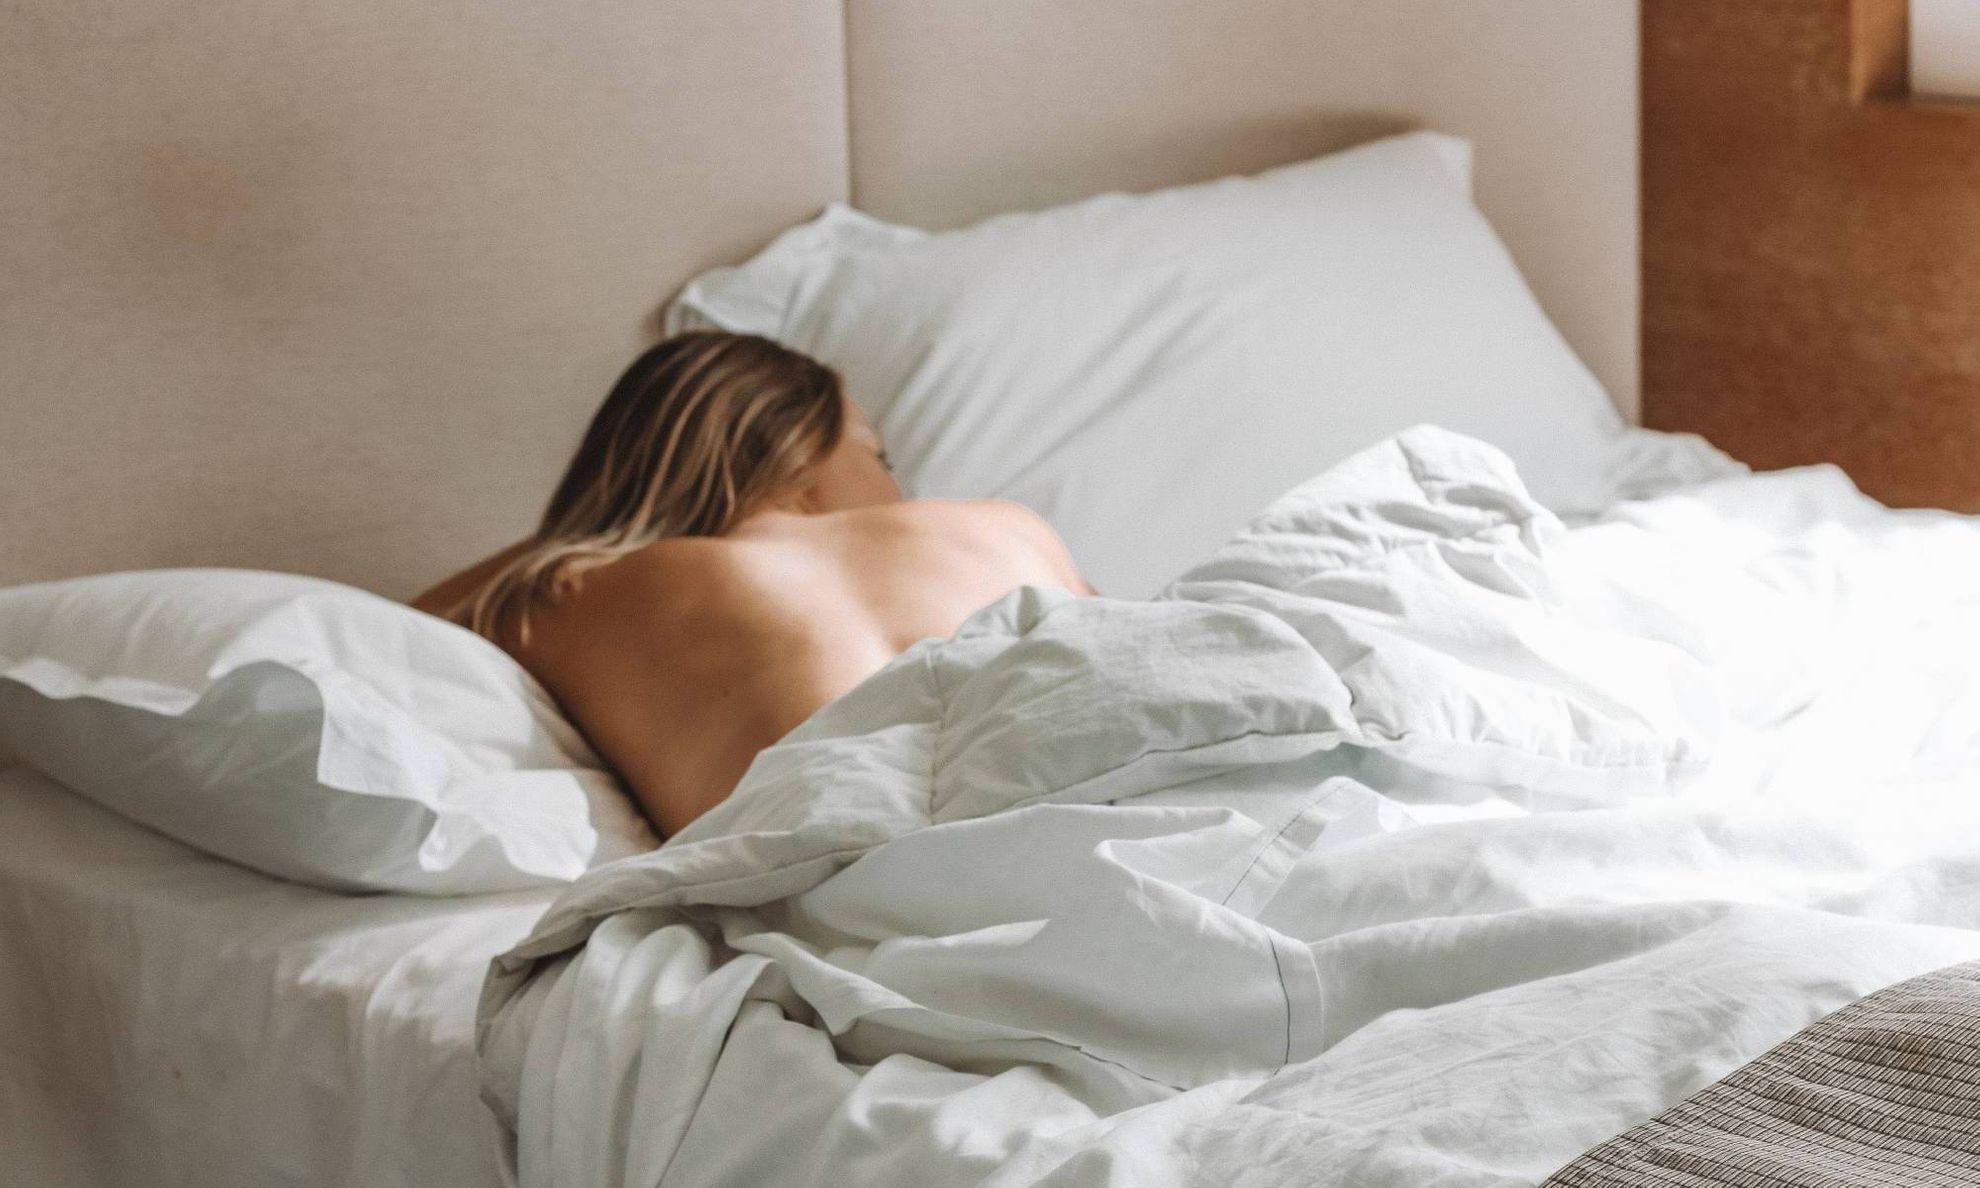 Девушка спит в постели, видно обнаженную спину